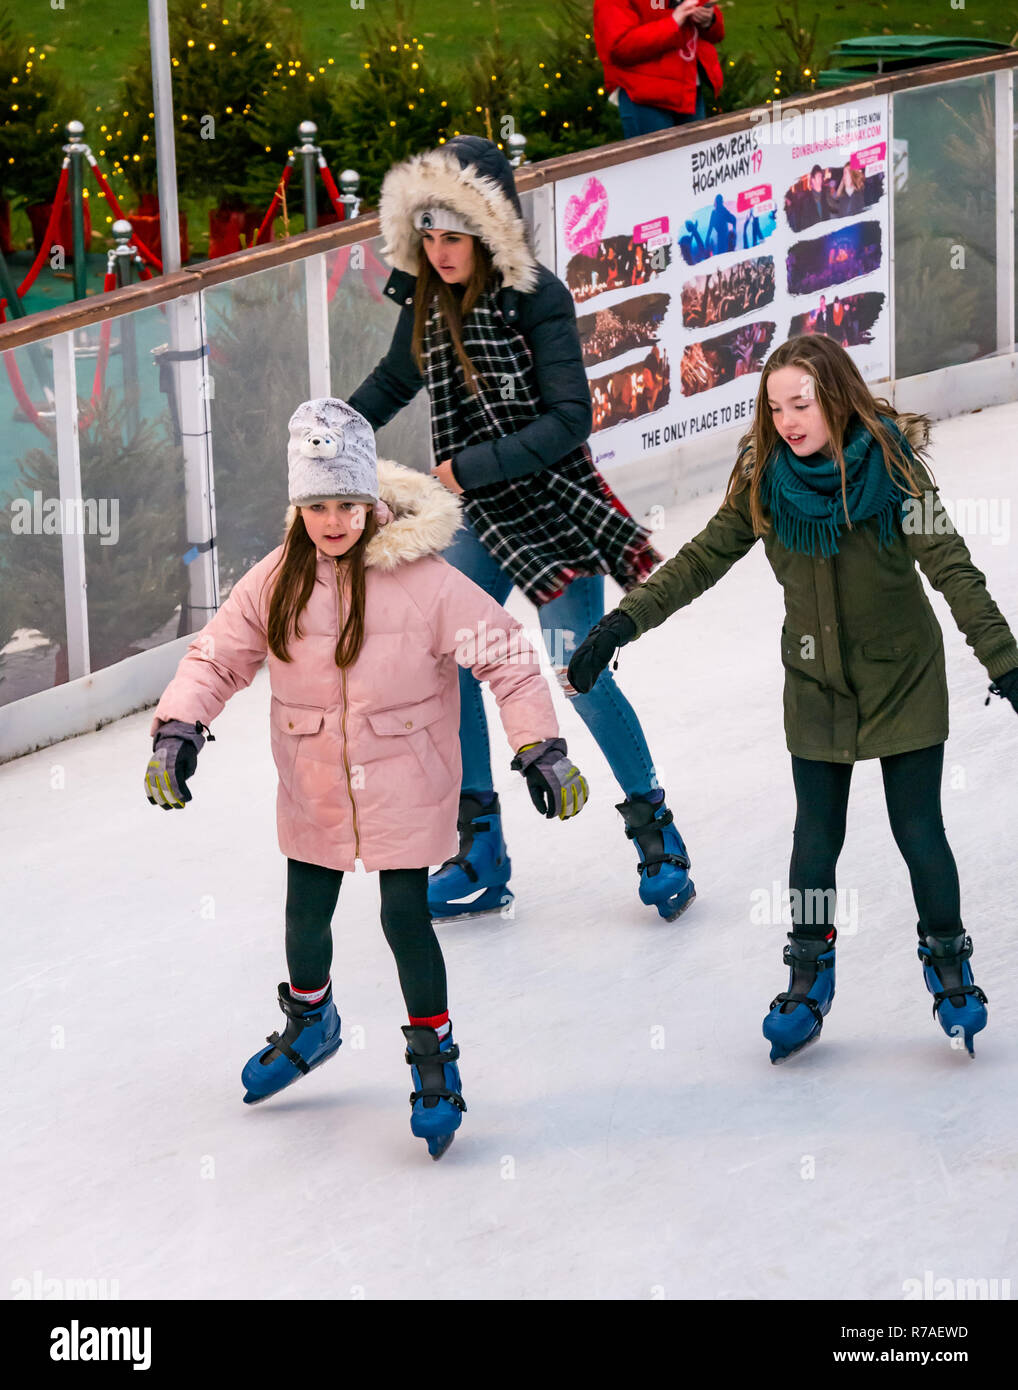 Edinburgh, Schottland, Großbritannien, 8. November 2018. Edinburghs Weihnachtsfeier mit Mädchen Schlittschuhlaufen auf der Eislaufbahn in St. Andrew Square Stockfoto